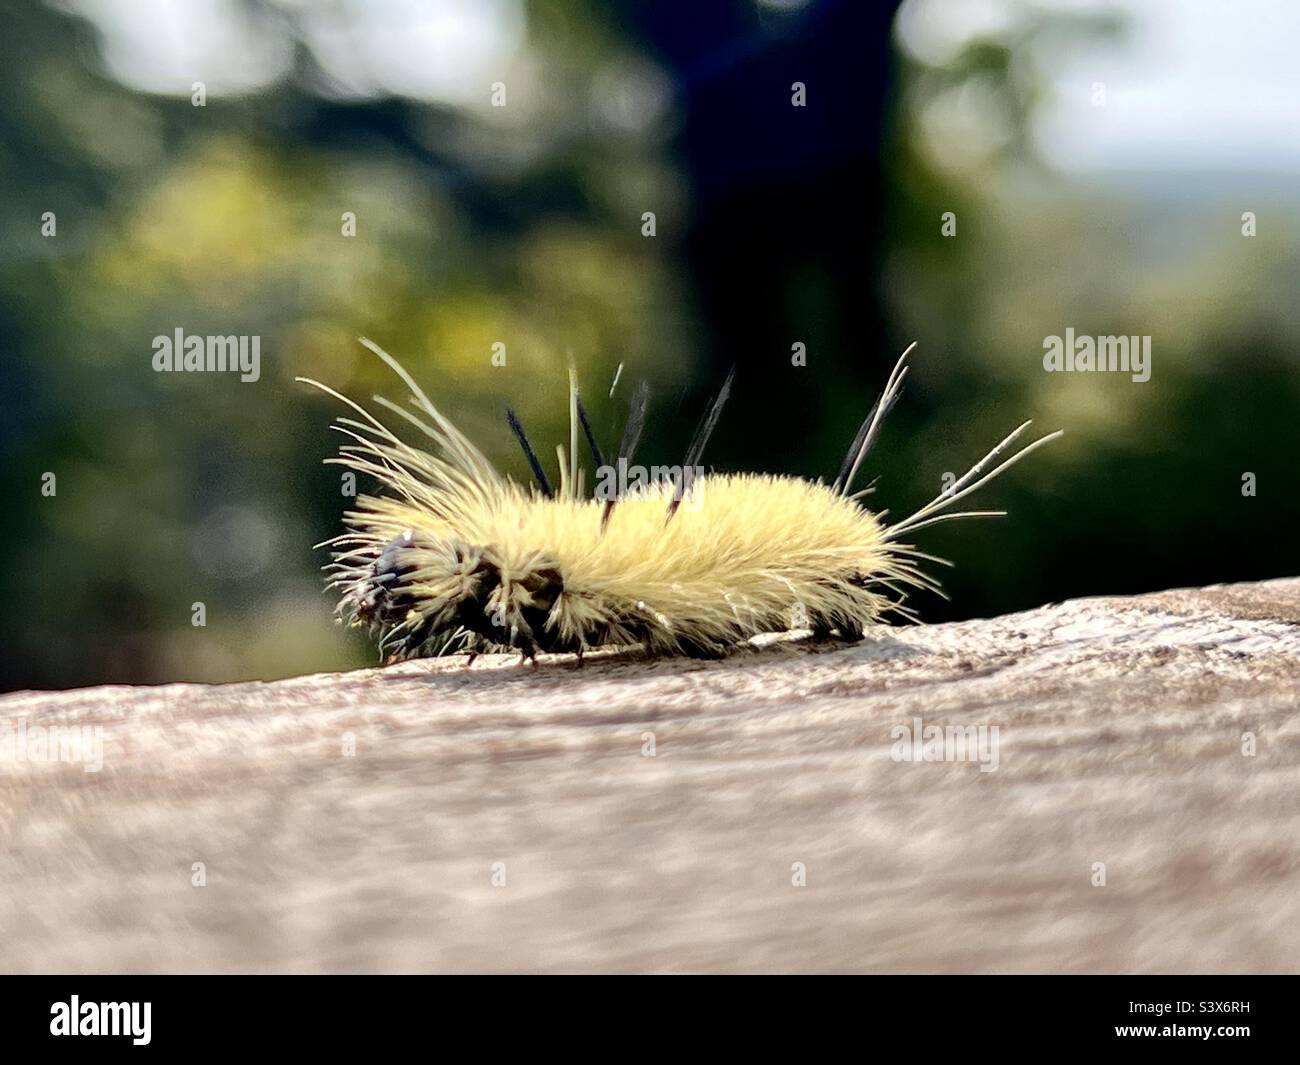 Ein Dolch Moth Caterpillar kriecht an einem Deckgeländer entlang. Nicht berühren - die Spitzen werden stechen! Stockfoto